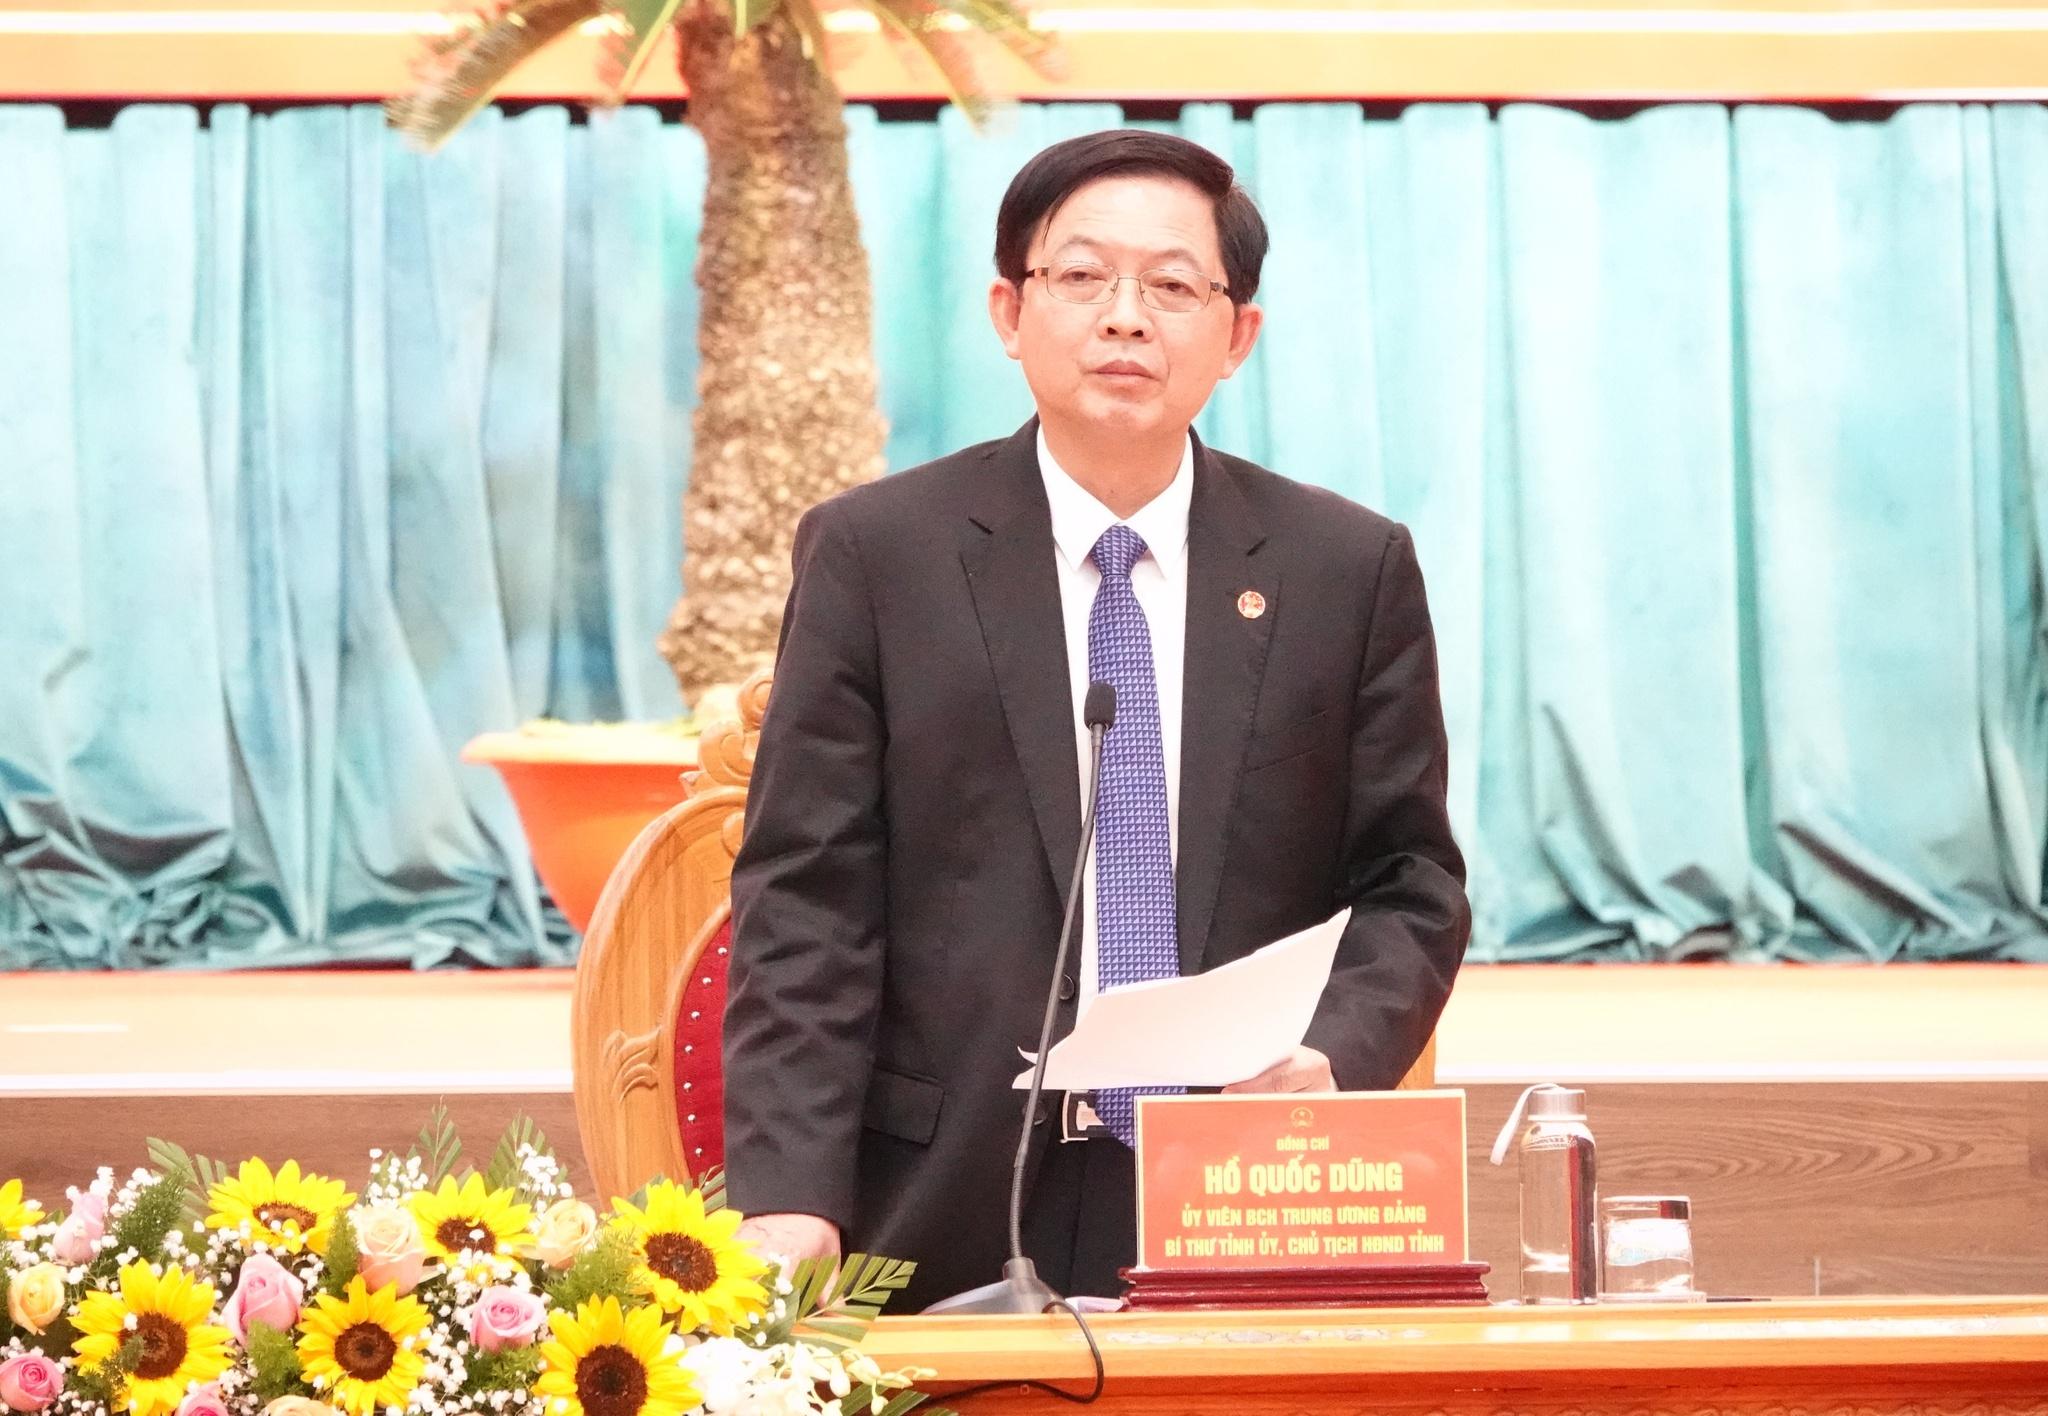 Chủ tịch nước Nguyễn Xuân Phúc: Tỉnh Bình Định cần mục tiêu phát triển bền vững - ảnh 3